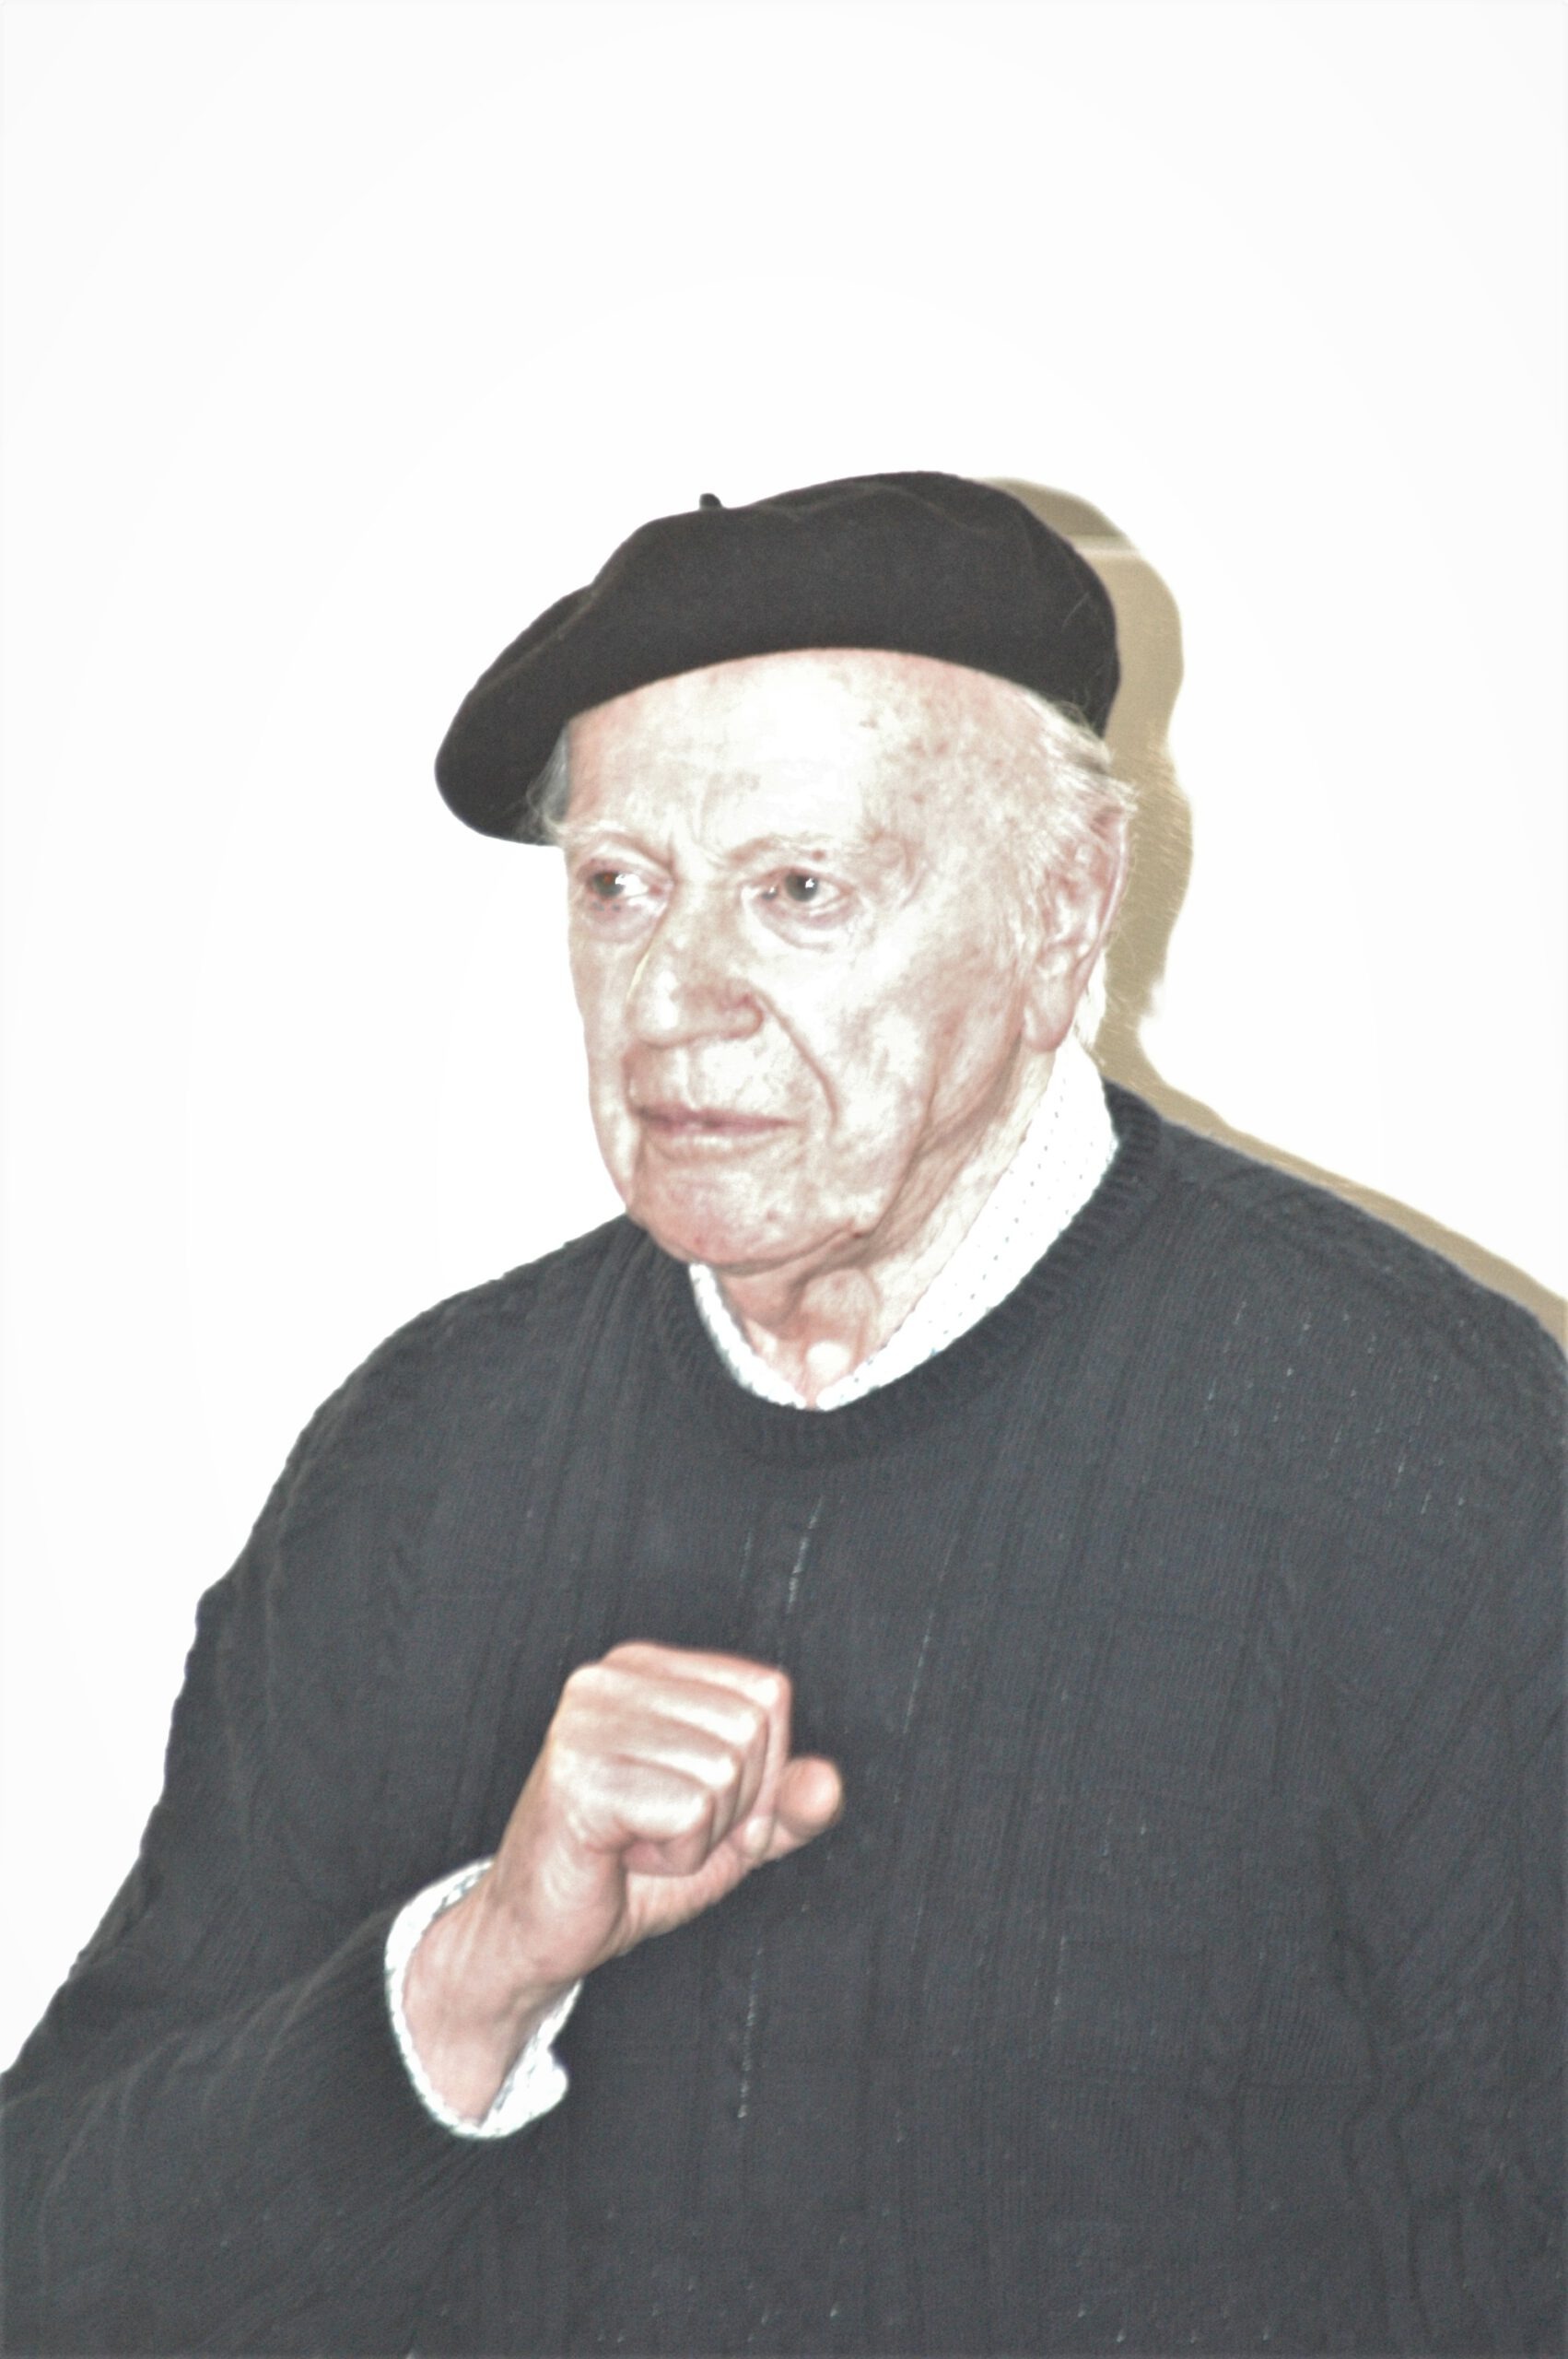 2006: Porträt von Egon Altdorf entstanden bei der Feier anlässlich des 40. Jahrestags der Einweihung der Synagoge. Fotograf: Igor Eisenschtat. Sammlung Jüdische Gemeinde Wiesbaden